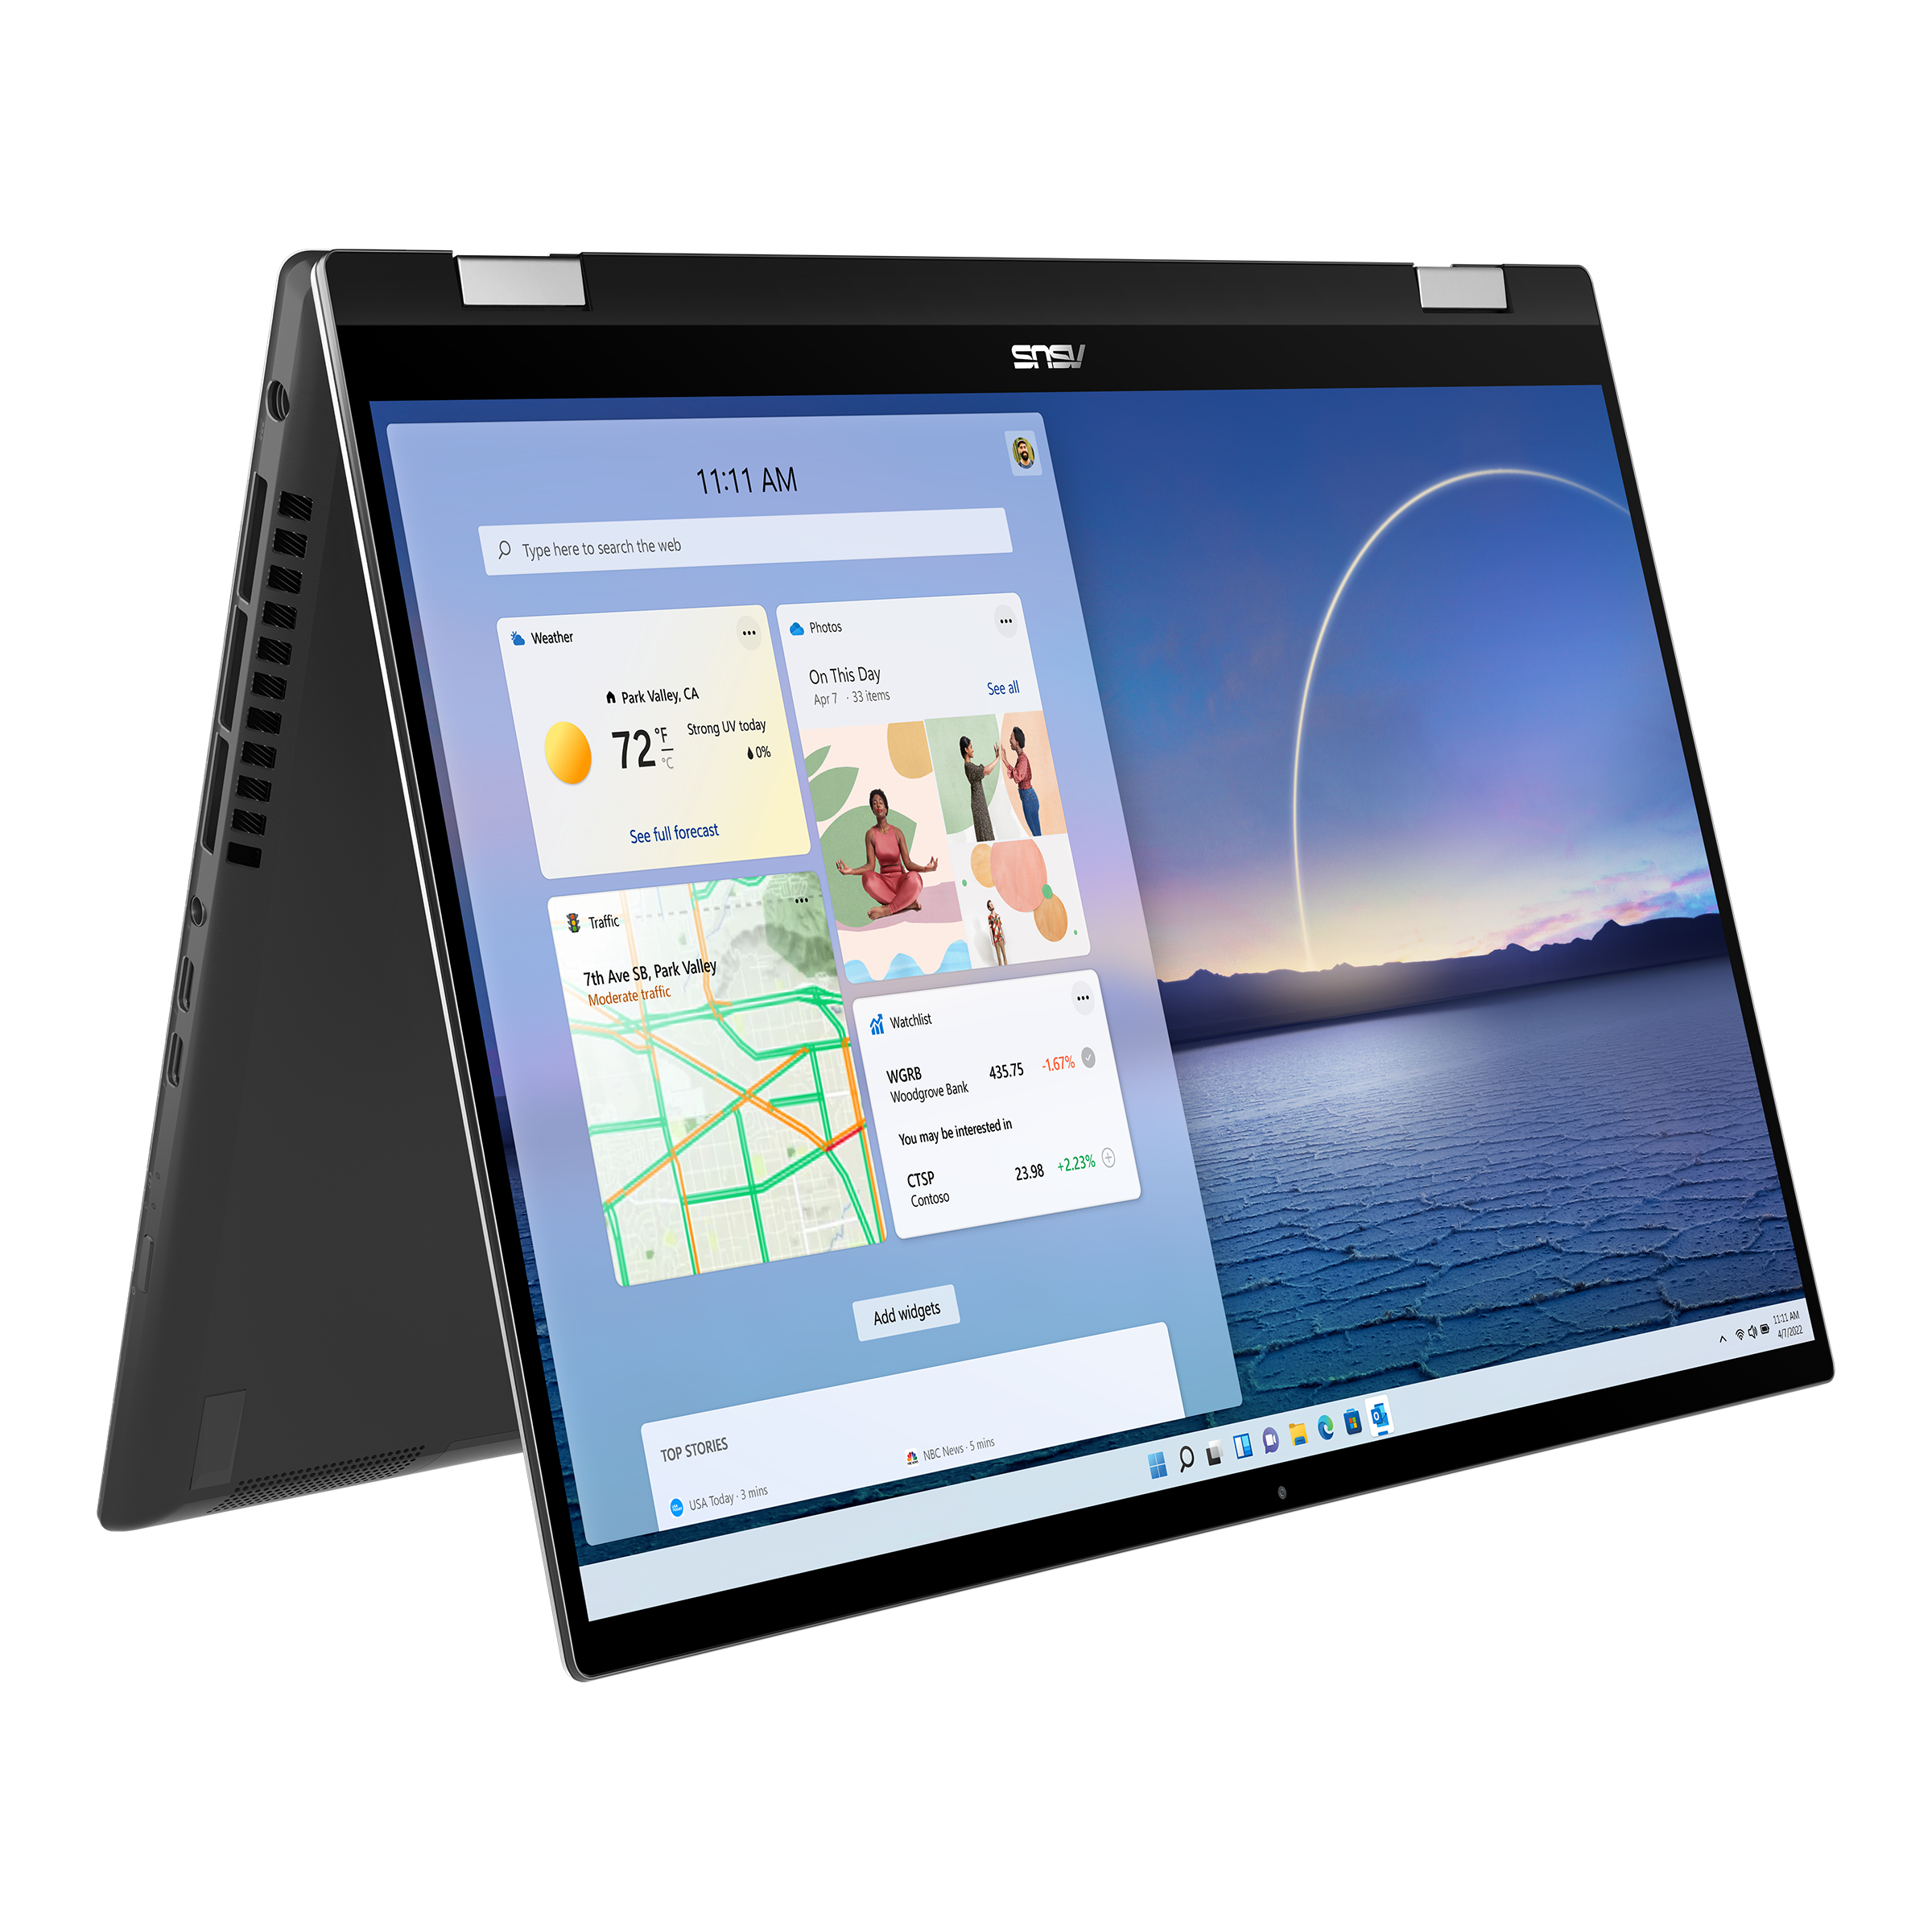 Zenbook Flip 15 UX564｜Laptops For Home｜ASUS Global